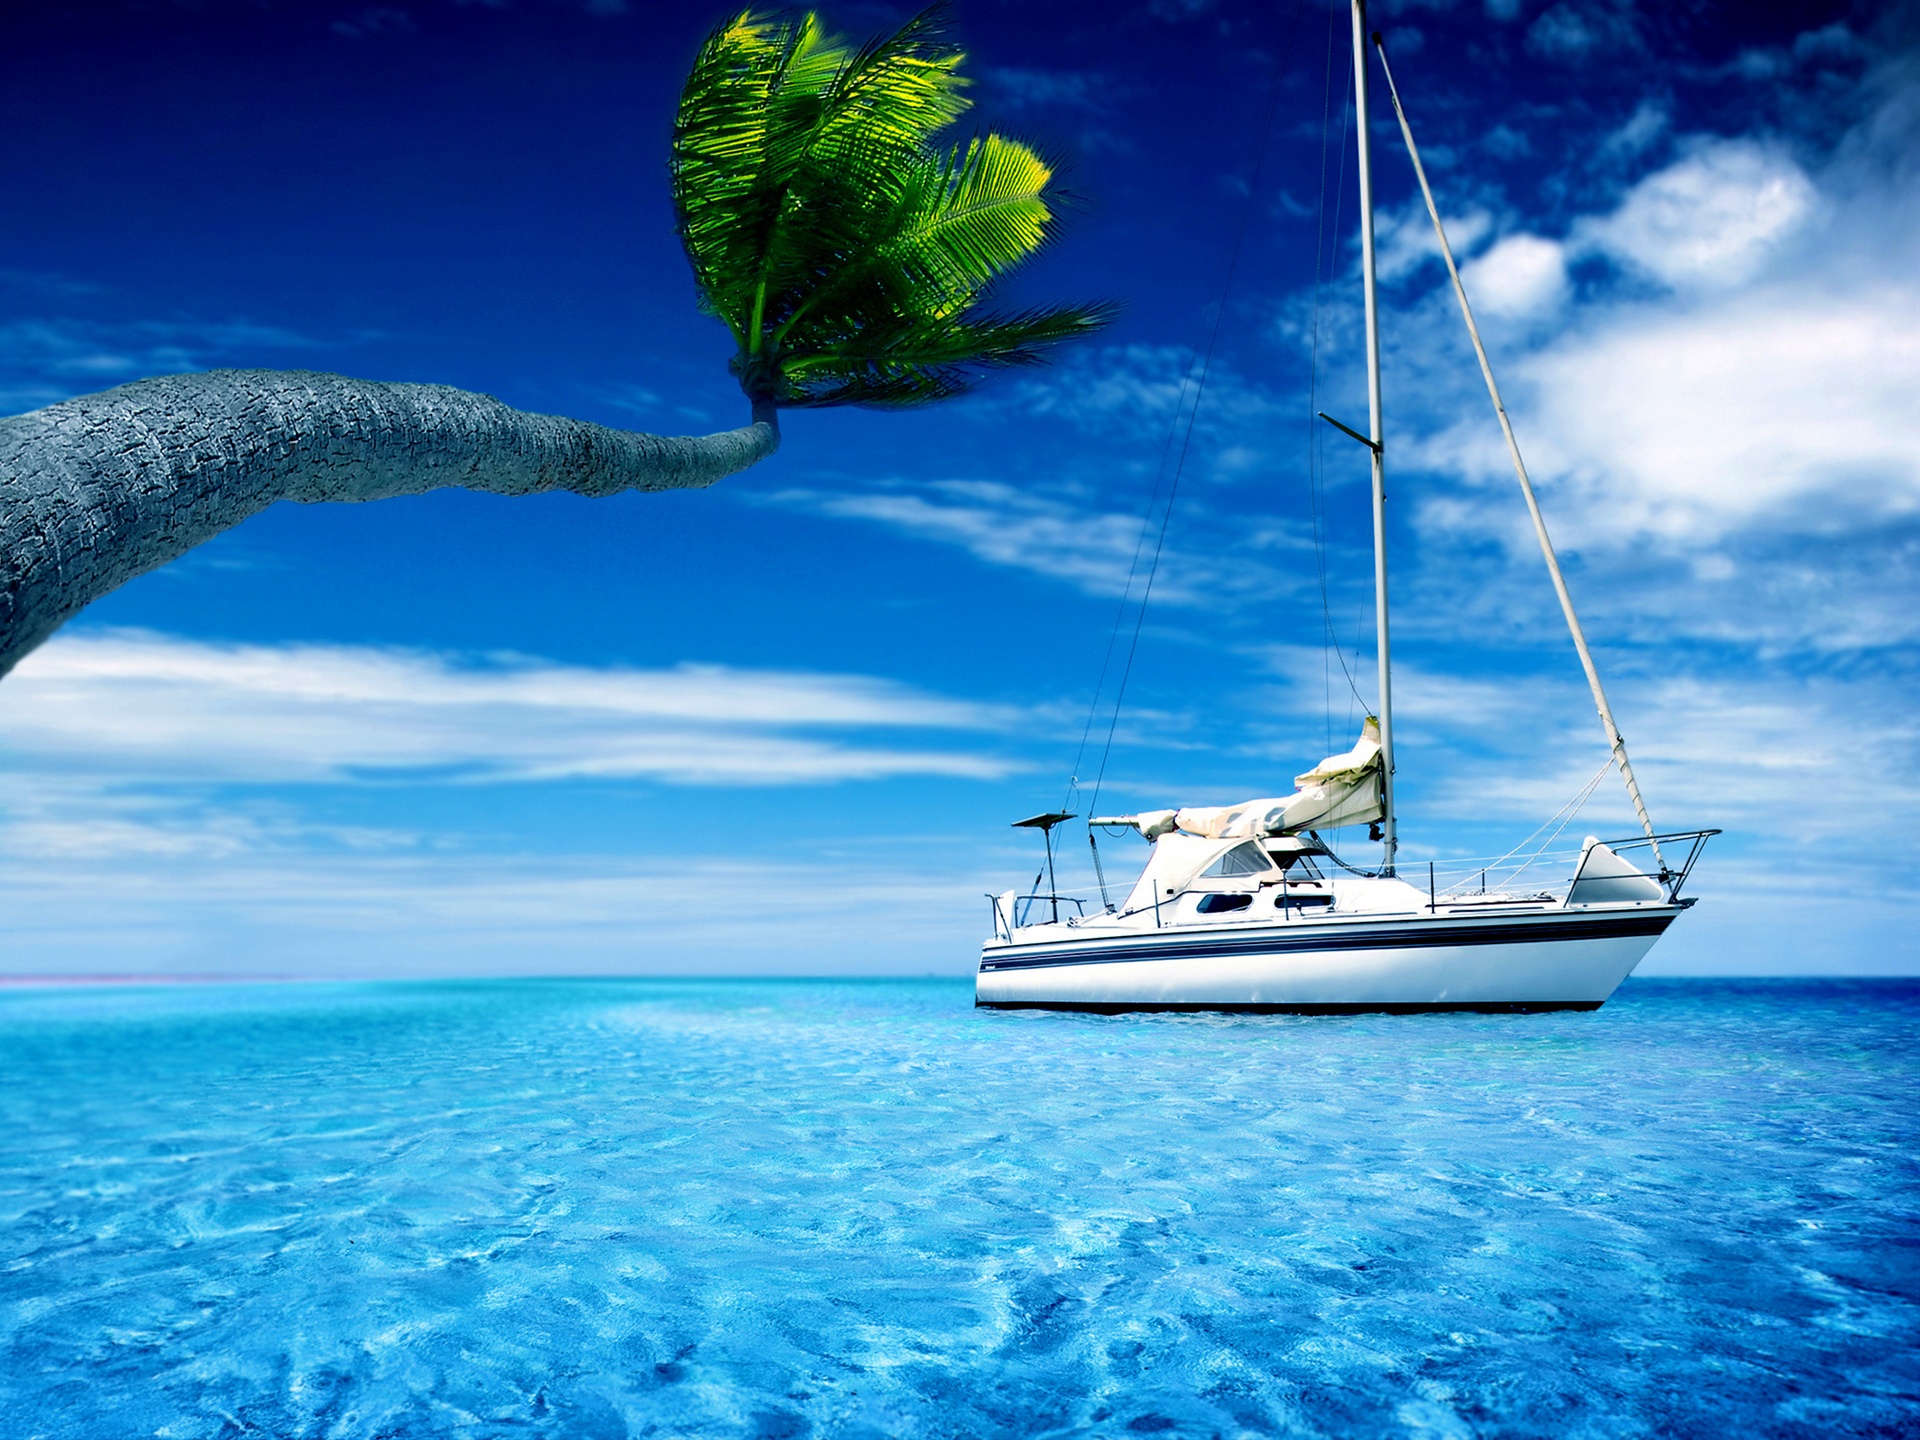 best water wallpaper,boat,sky,water,ocean,yacht